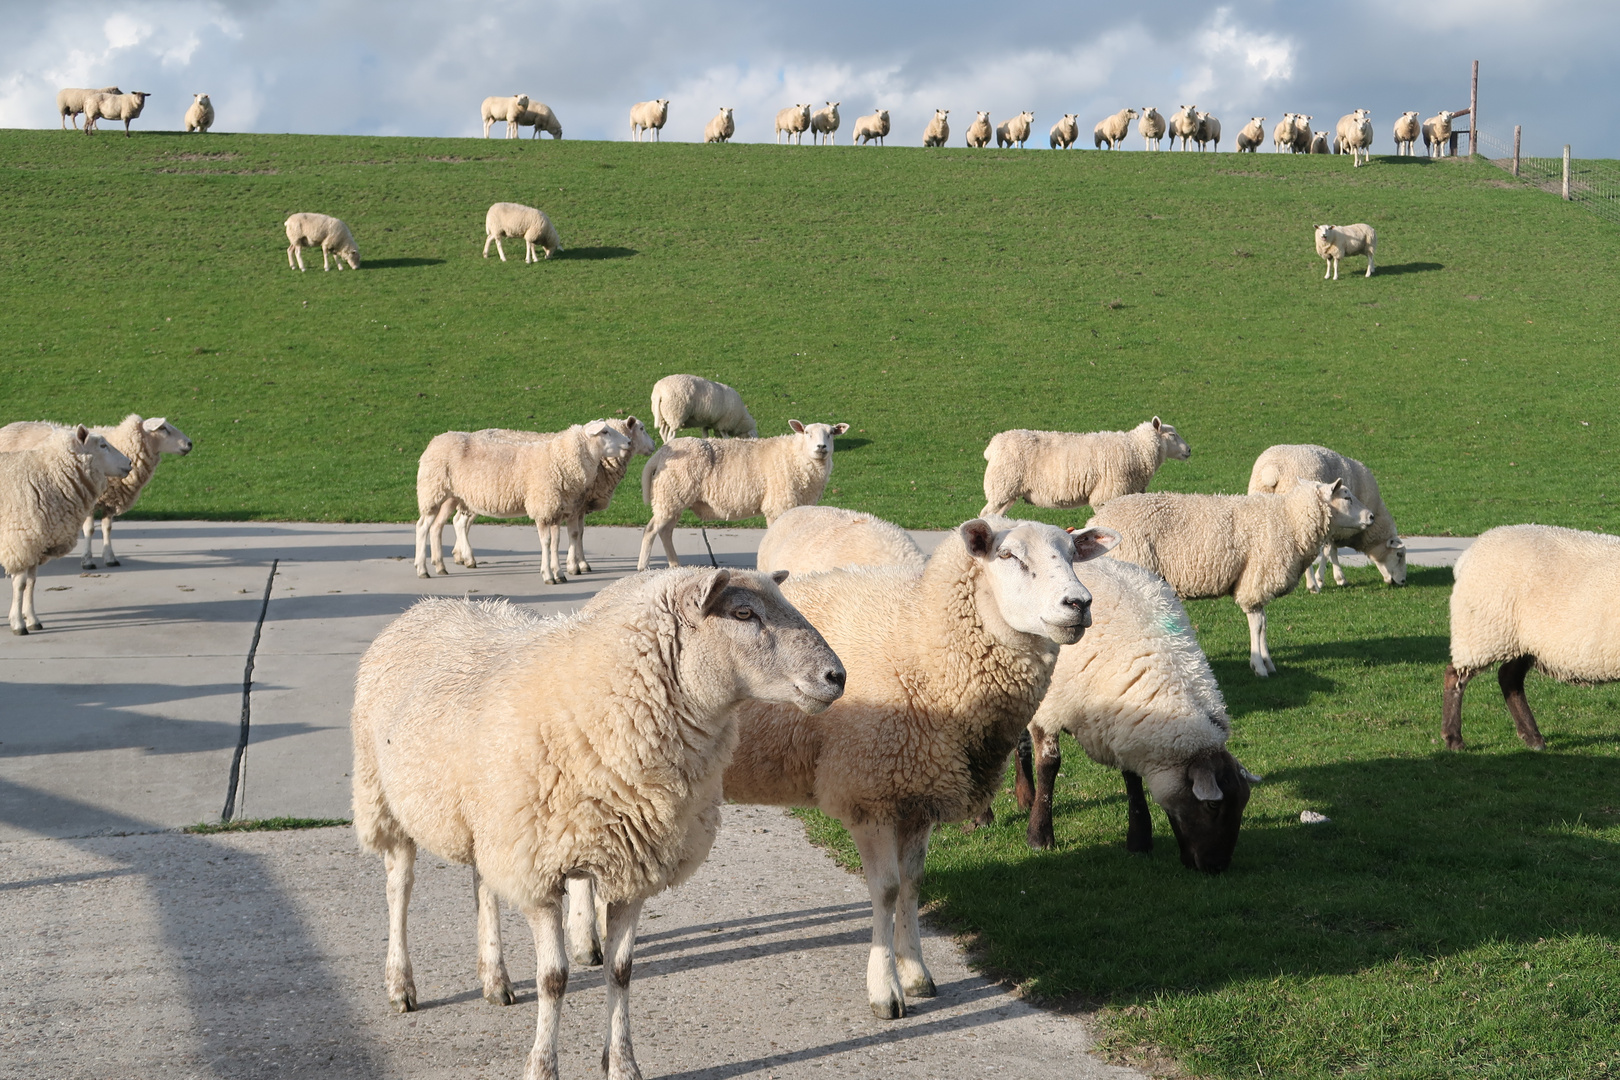  Schafe  am Deich Foto Bild  deutschland europe 